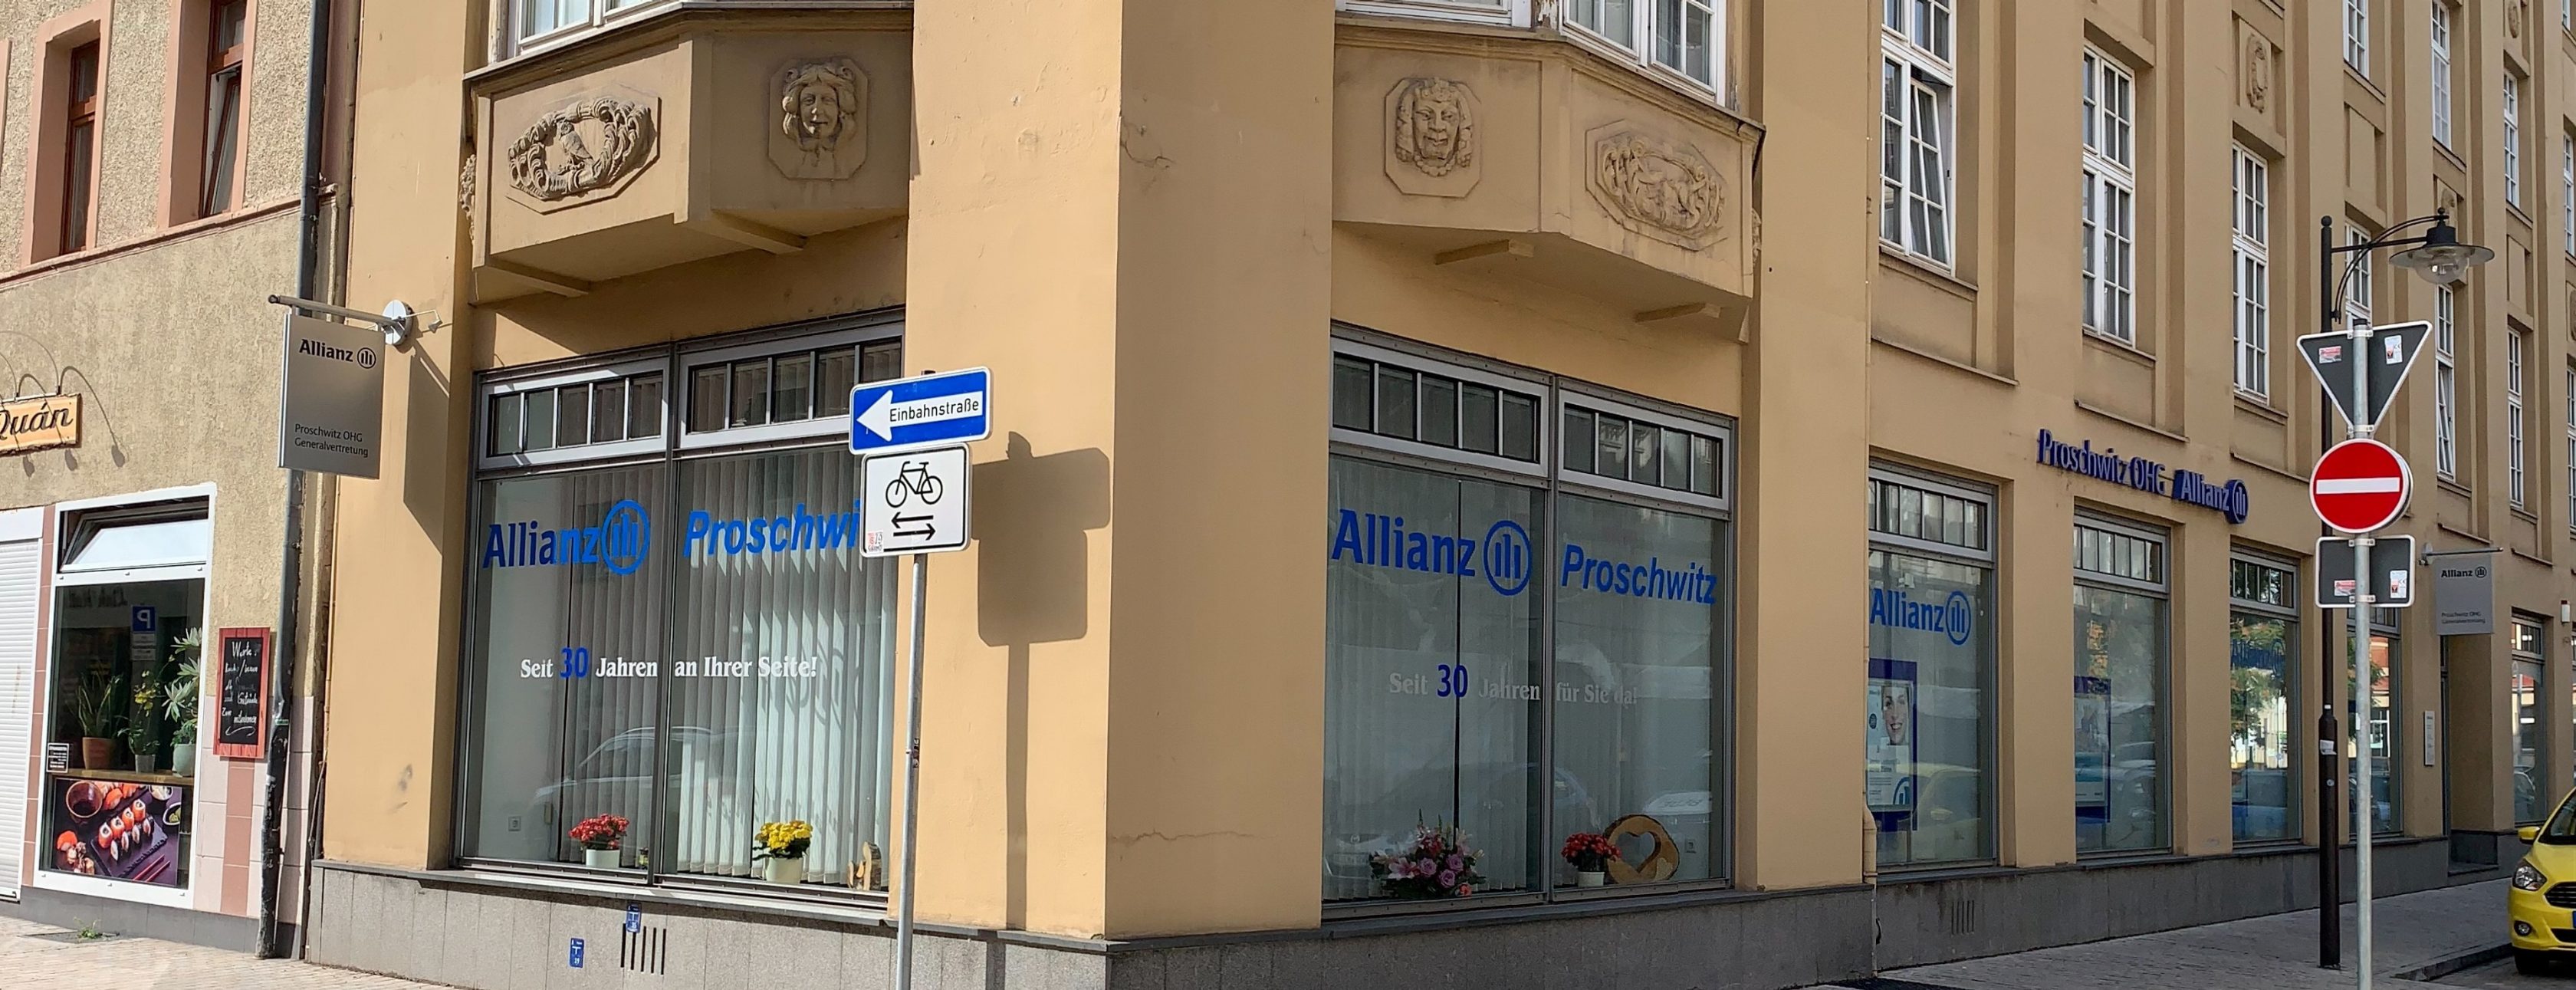 Allianz Versicherung Proschwitz OHG Weißenfels - Allianz Versicherung Weißenfels 